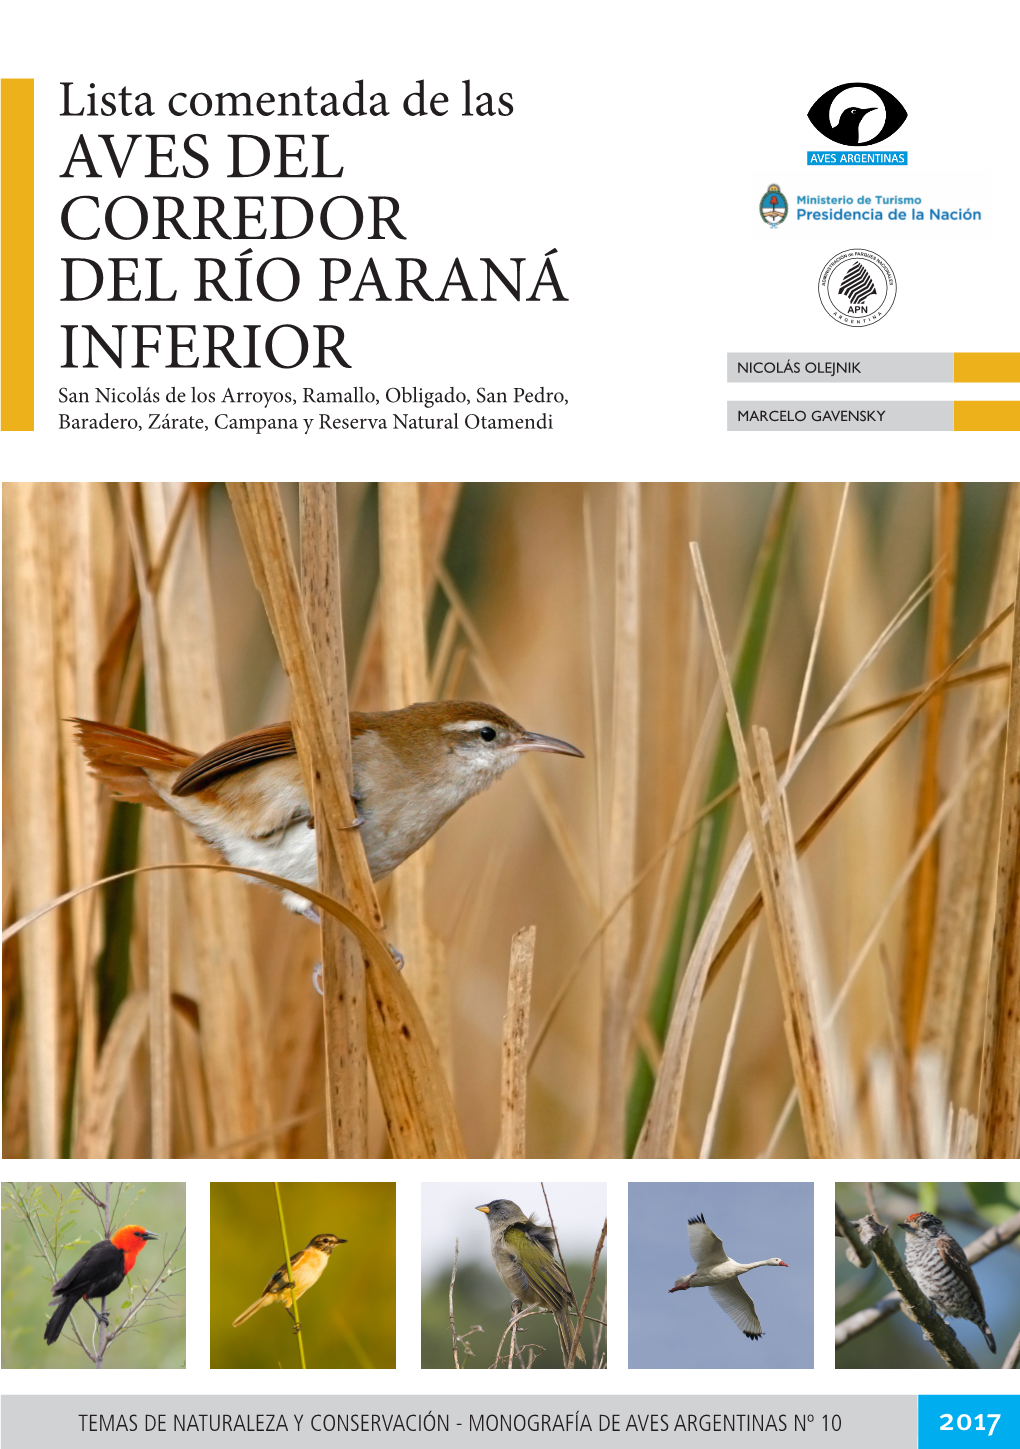 Paper 2017 Lista Comentada De Las Aves Del Corredor Del Río Paraná